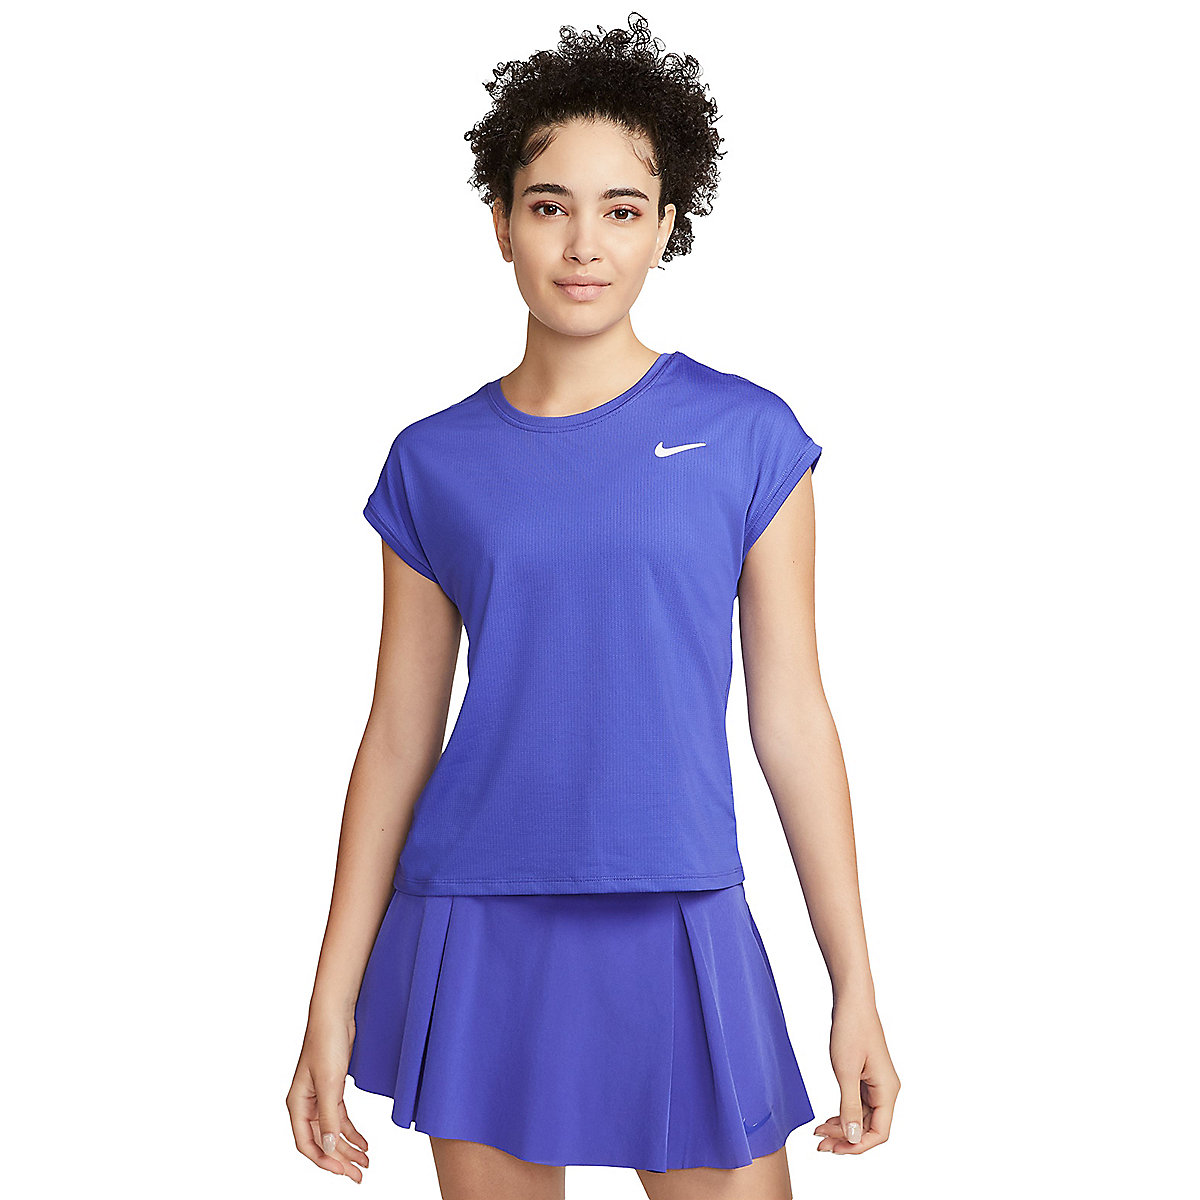 tee-shirt de tennis femme nikecourt victory women's short-sle